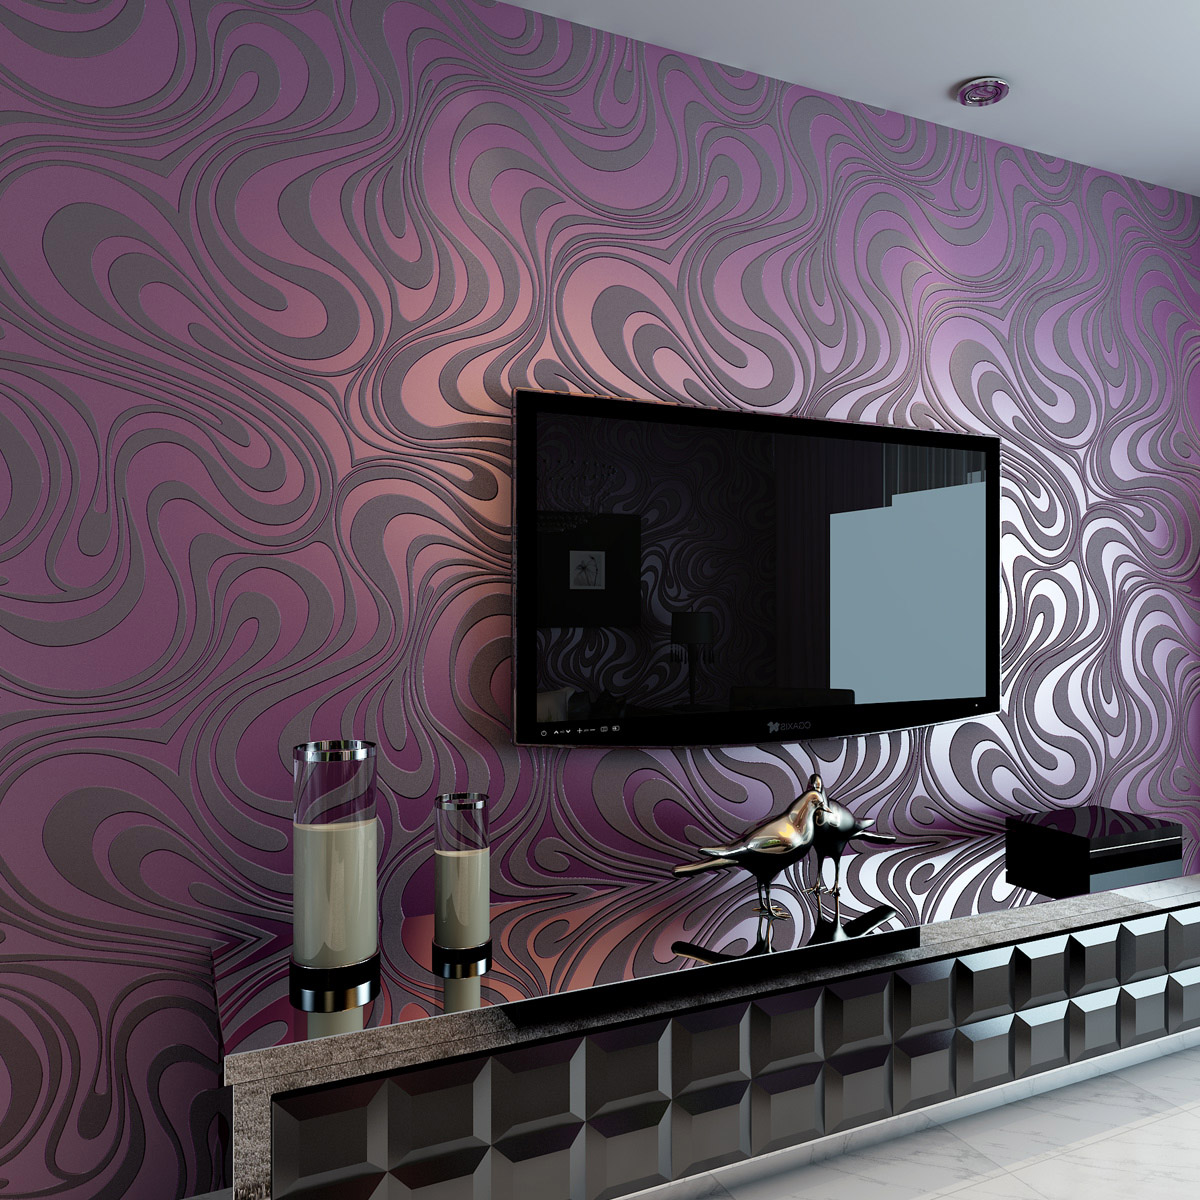 Обои для стен фиолетового цвета » Картинки и фотографии дизайна квартир .